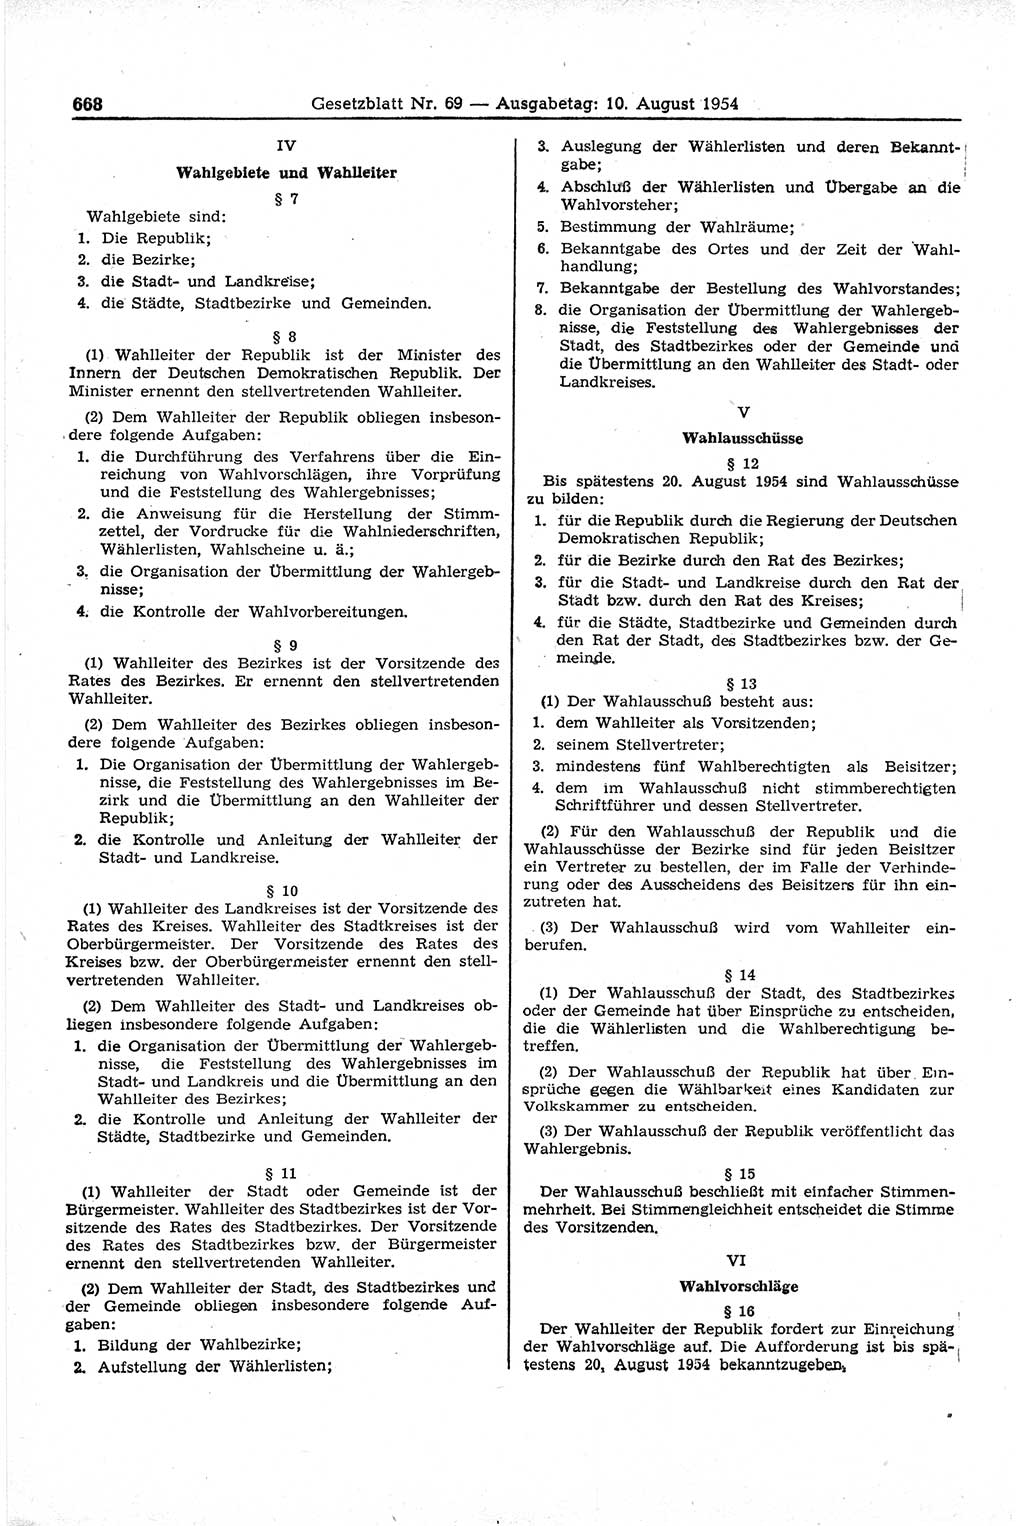 Gesetzblatt (GBl.) der Deutschen Demokratischen Republik (DDR) 1954, Seite 668 (GBl. DDR 1954, S. 668)